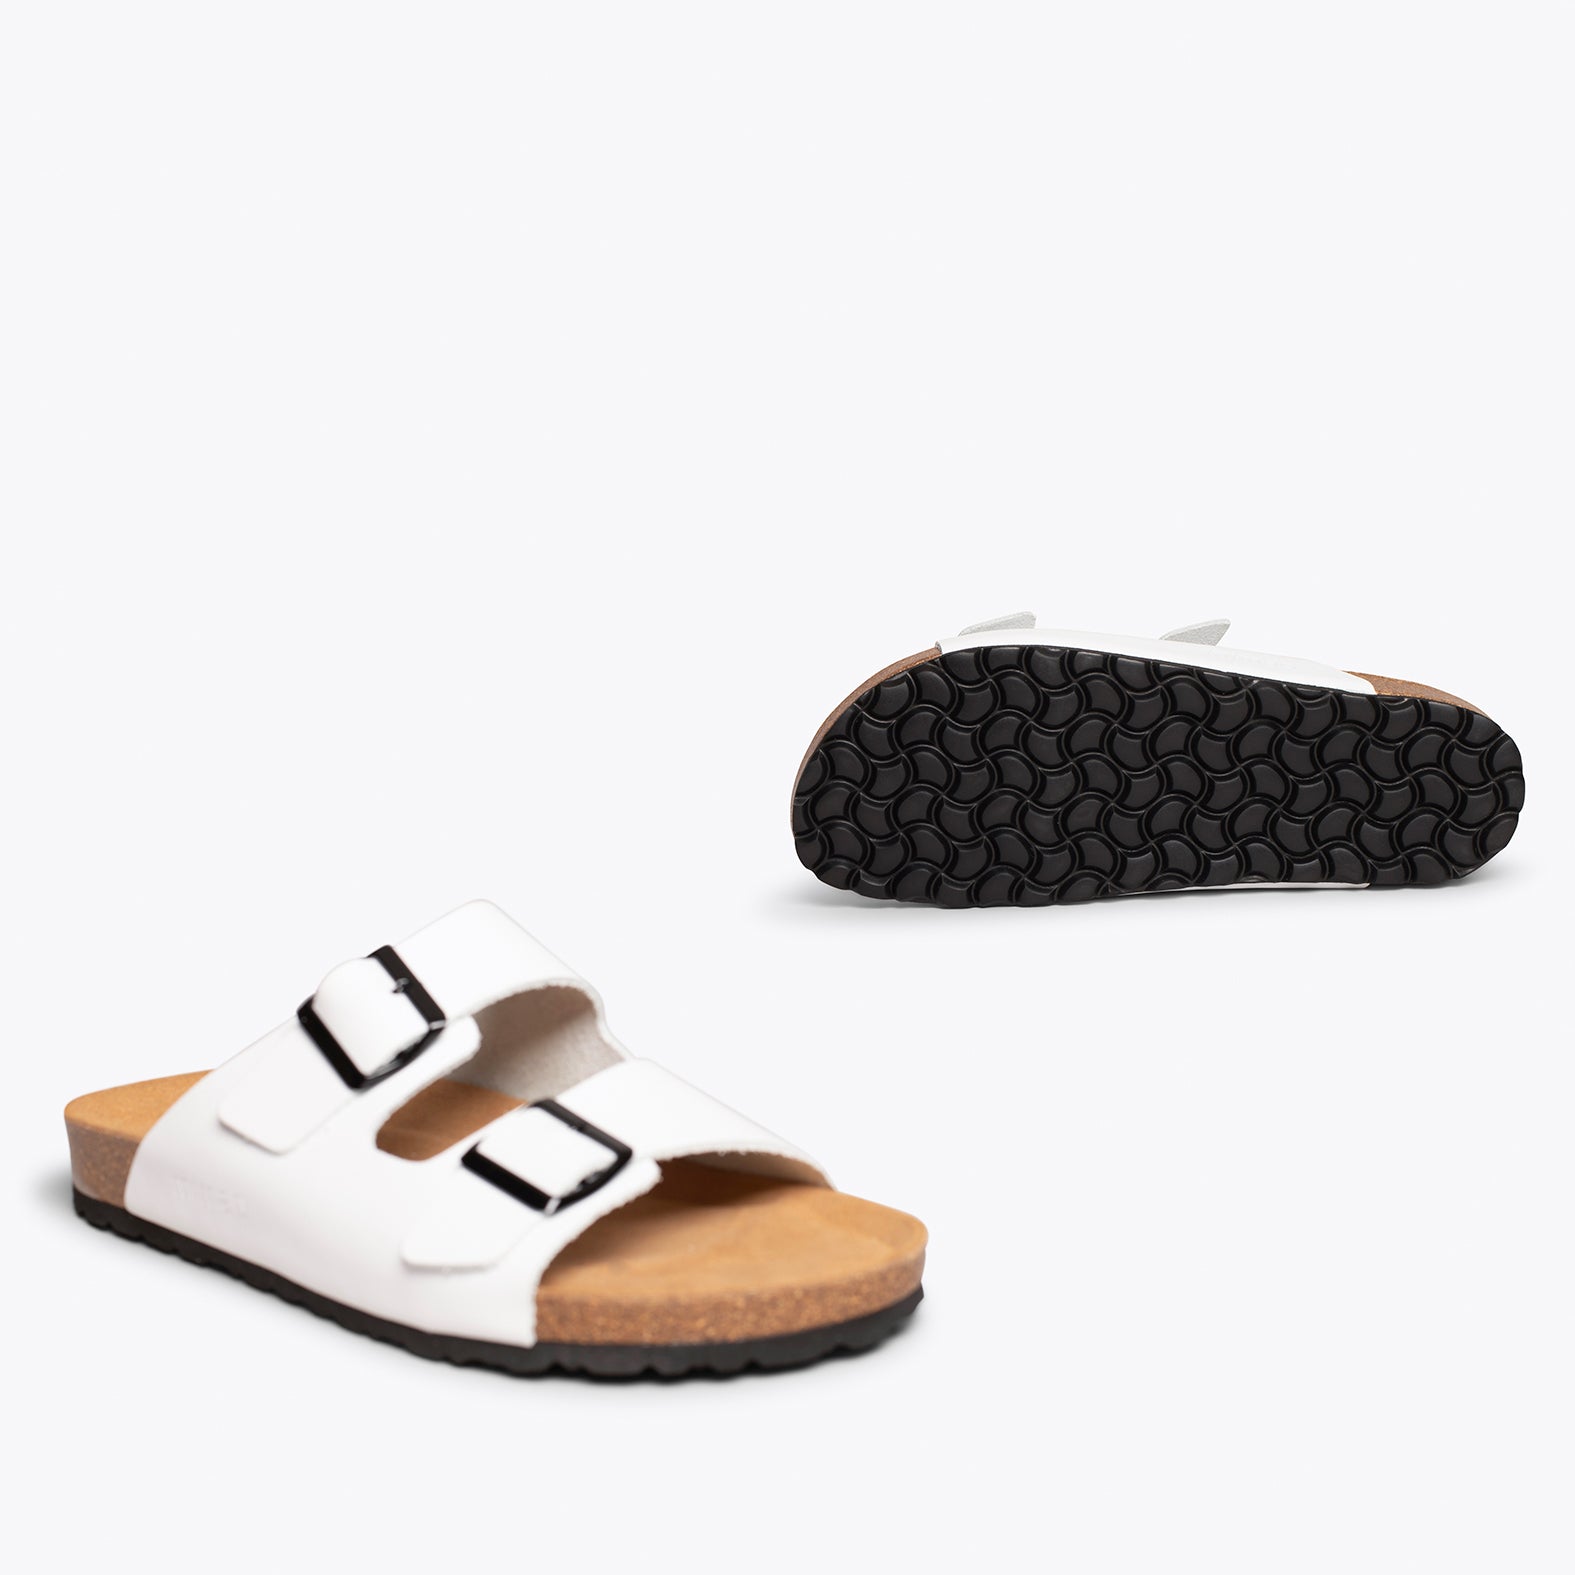 BIO – WHITE sandal with bio confort for men